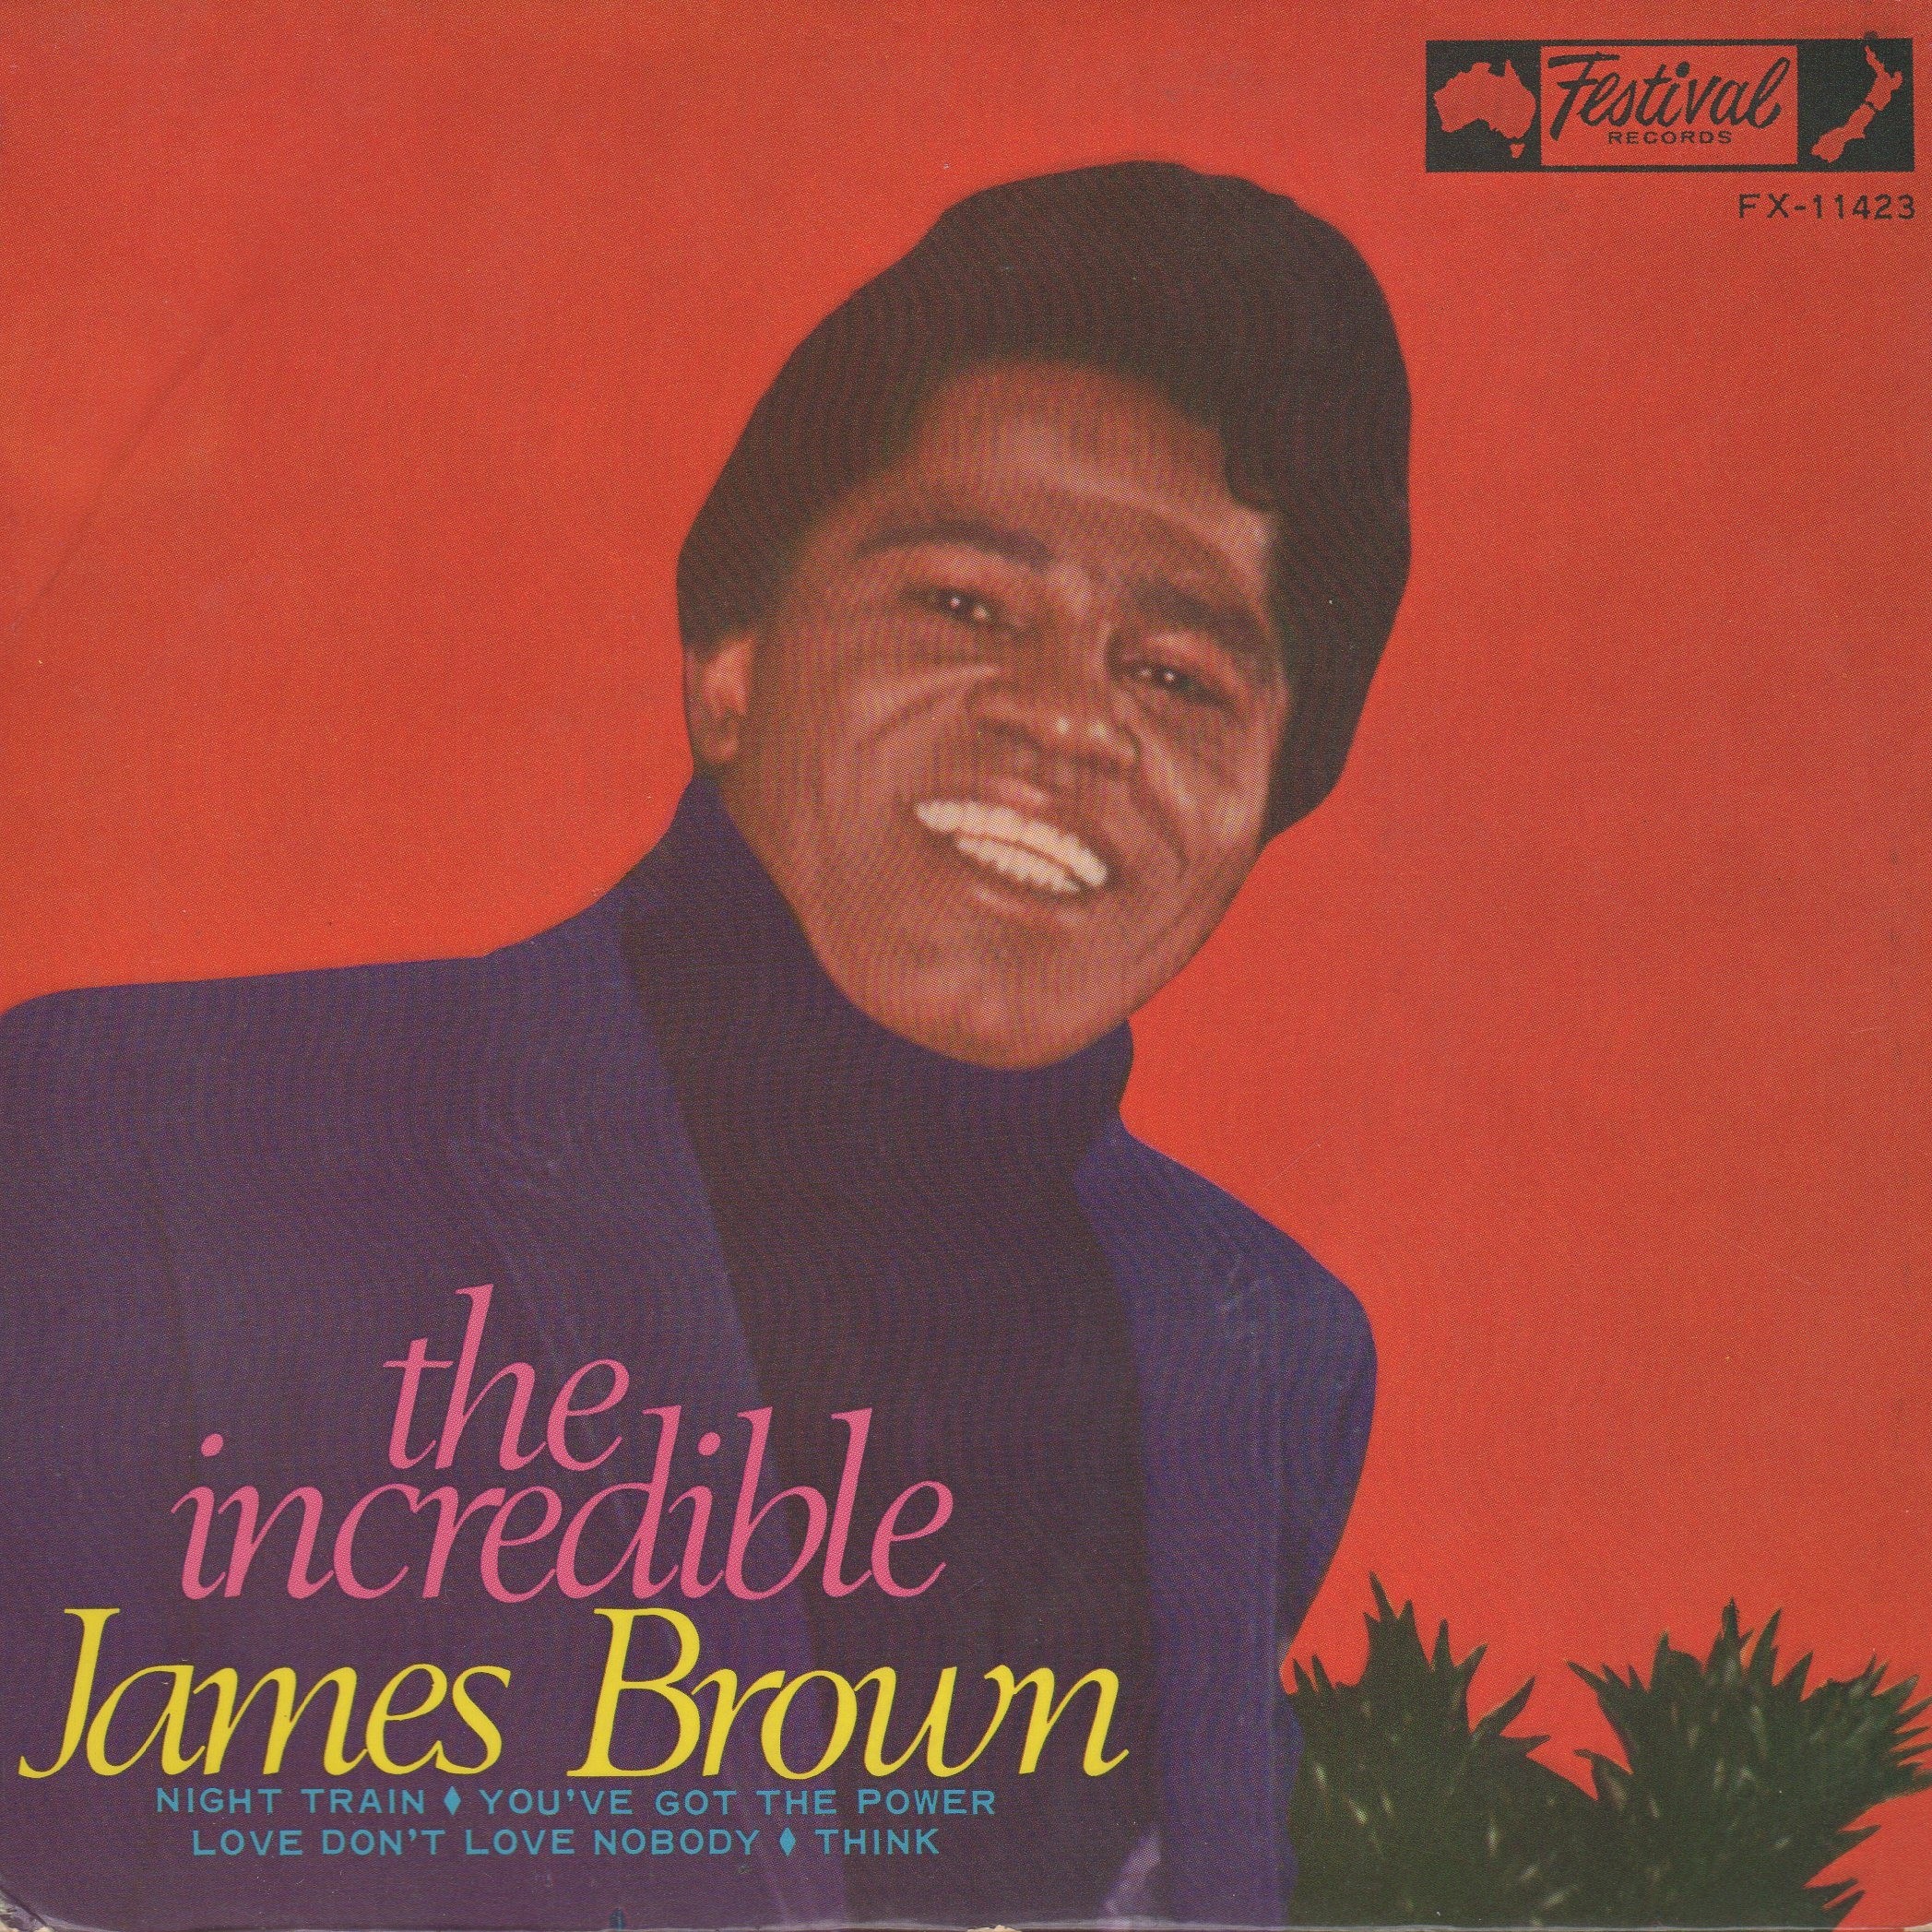 The Incredible James Brown EP